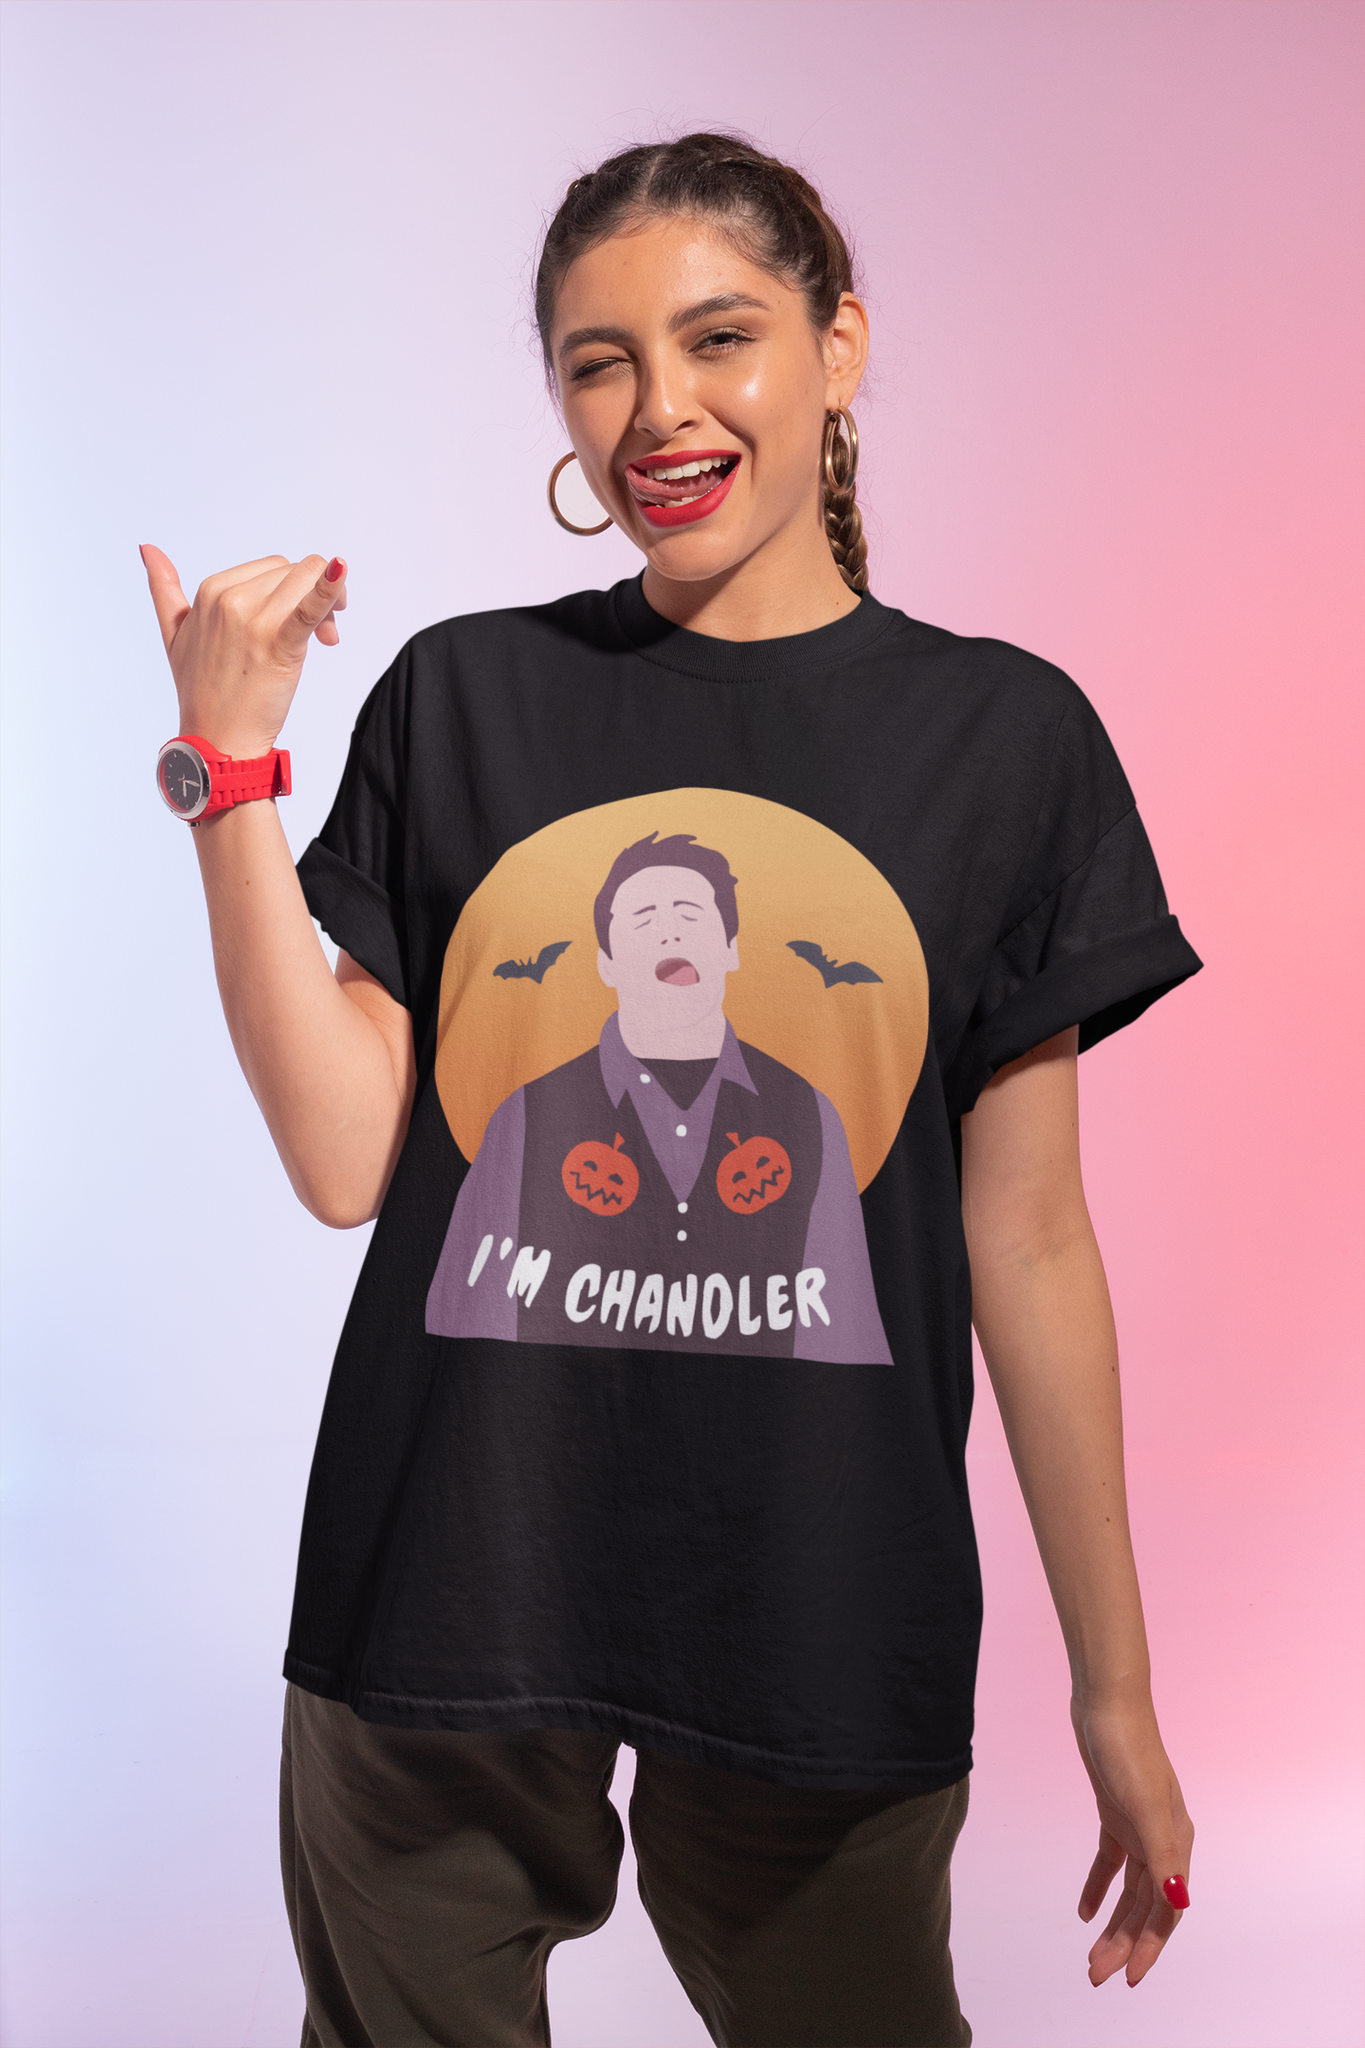 Friends TV Show T Shirt, Friends Shirt, Chandler T Shirt, Im Chandler Tshirt, Halloween Gifts